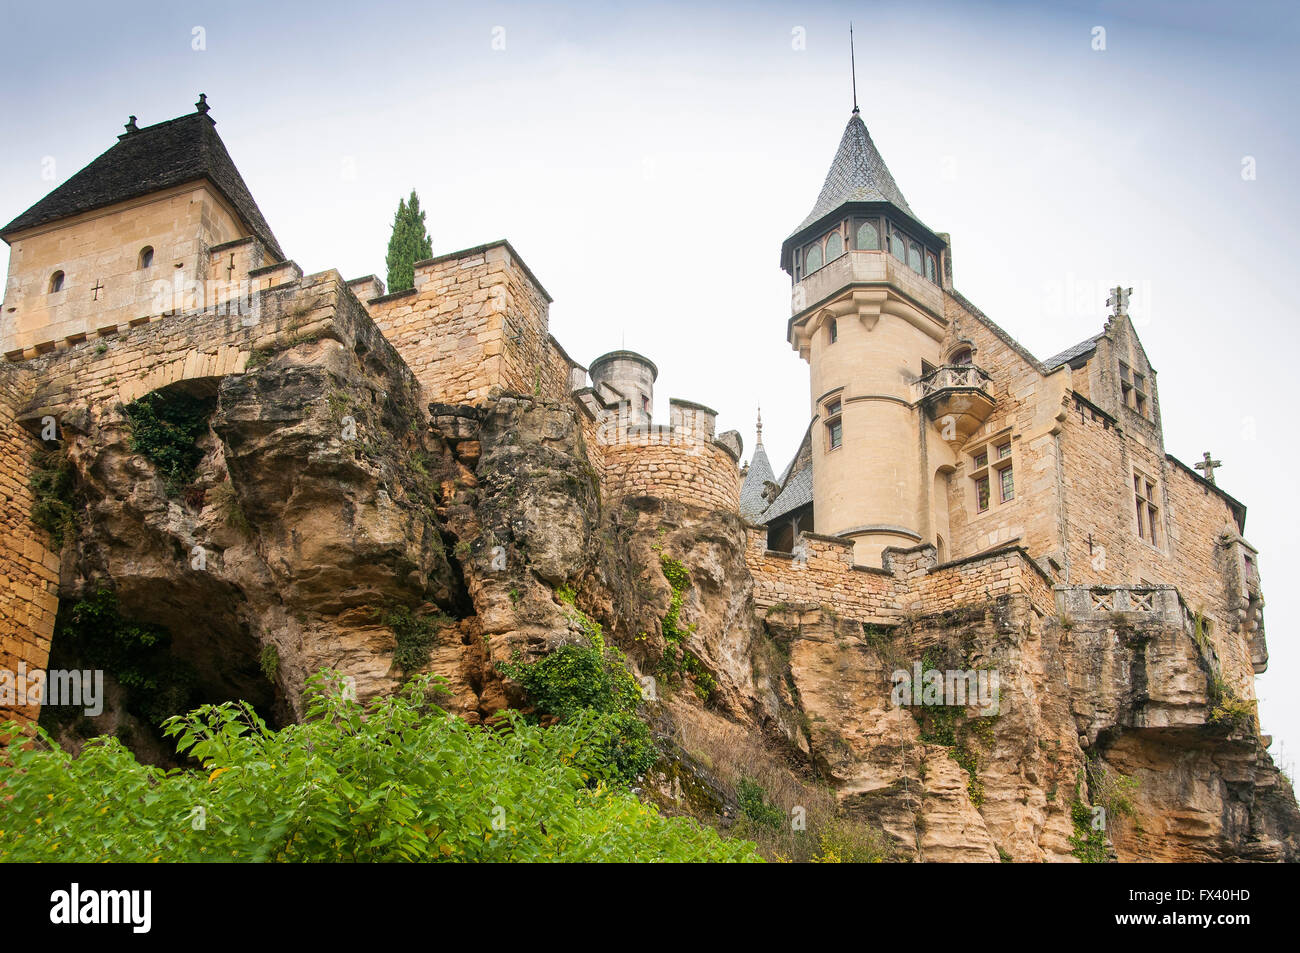 Klippe hängen Burg in Sarlat-la-Caneda in der Dordogne-Region Frankreichs. Stockfoto